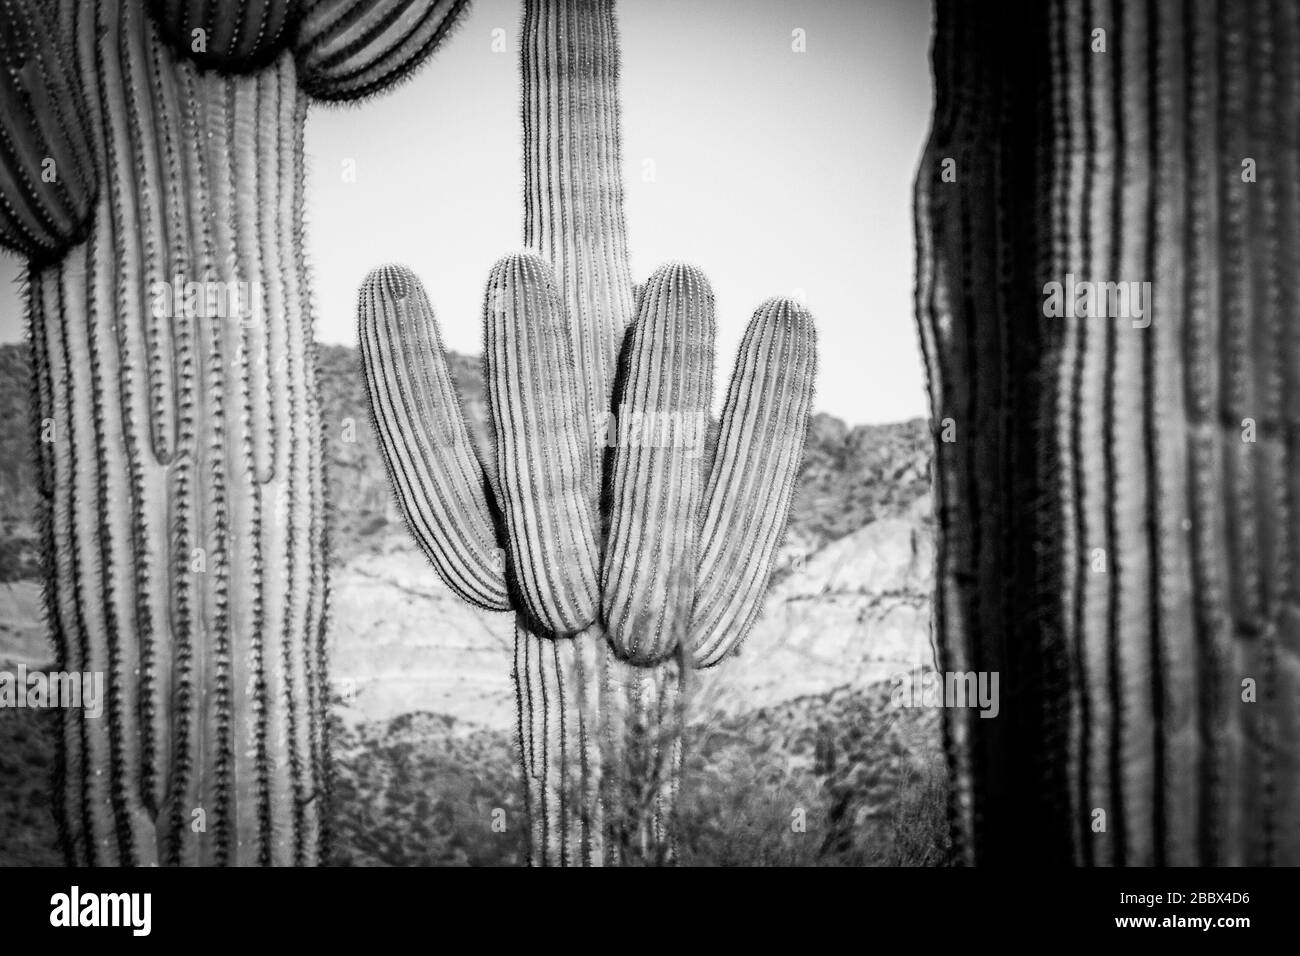 Une image en noir et blanc d'un cactus saguaro entre deux autres. Le cactus ne pousse que dans le désert de Sonora, en Arizona et au Mexique. Banque D'Images